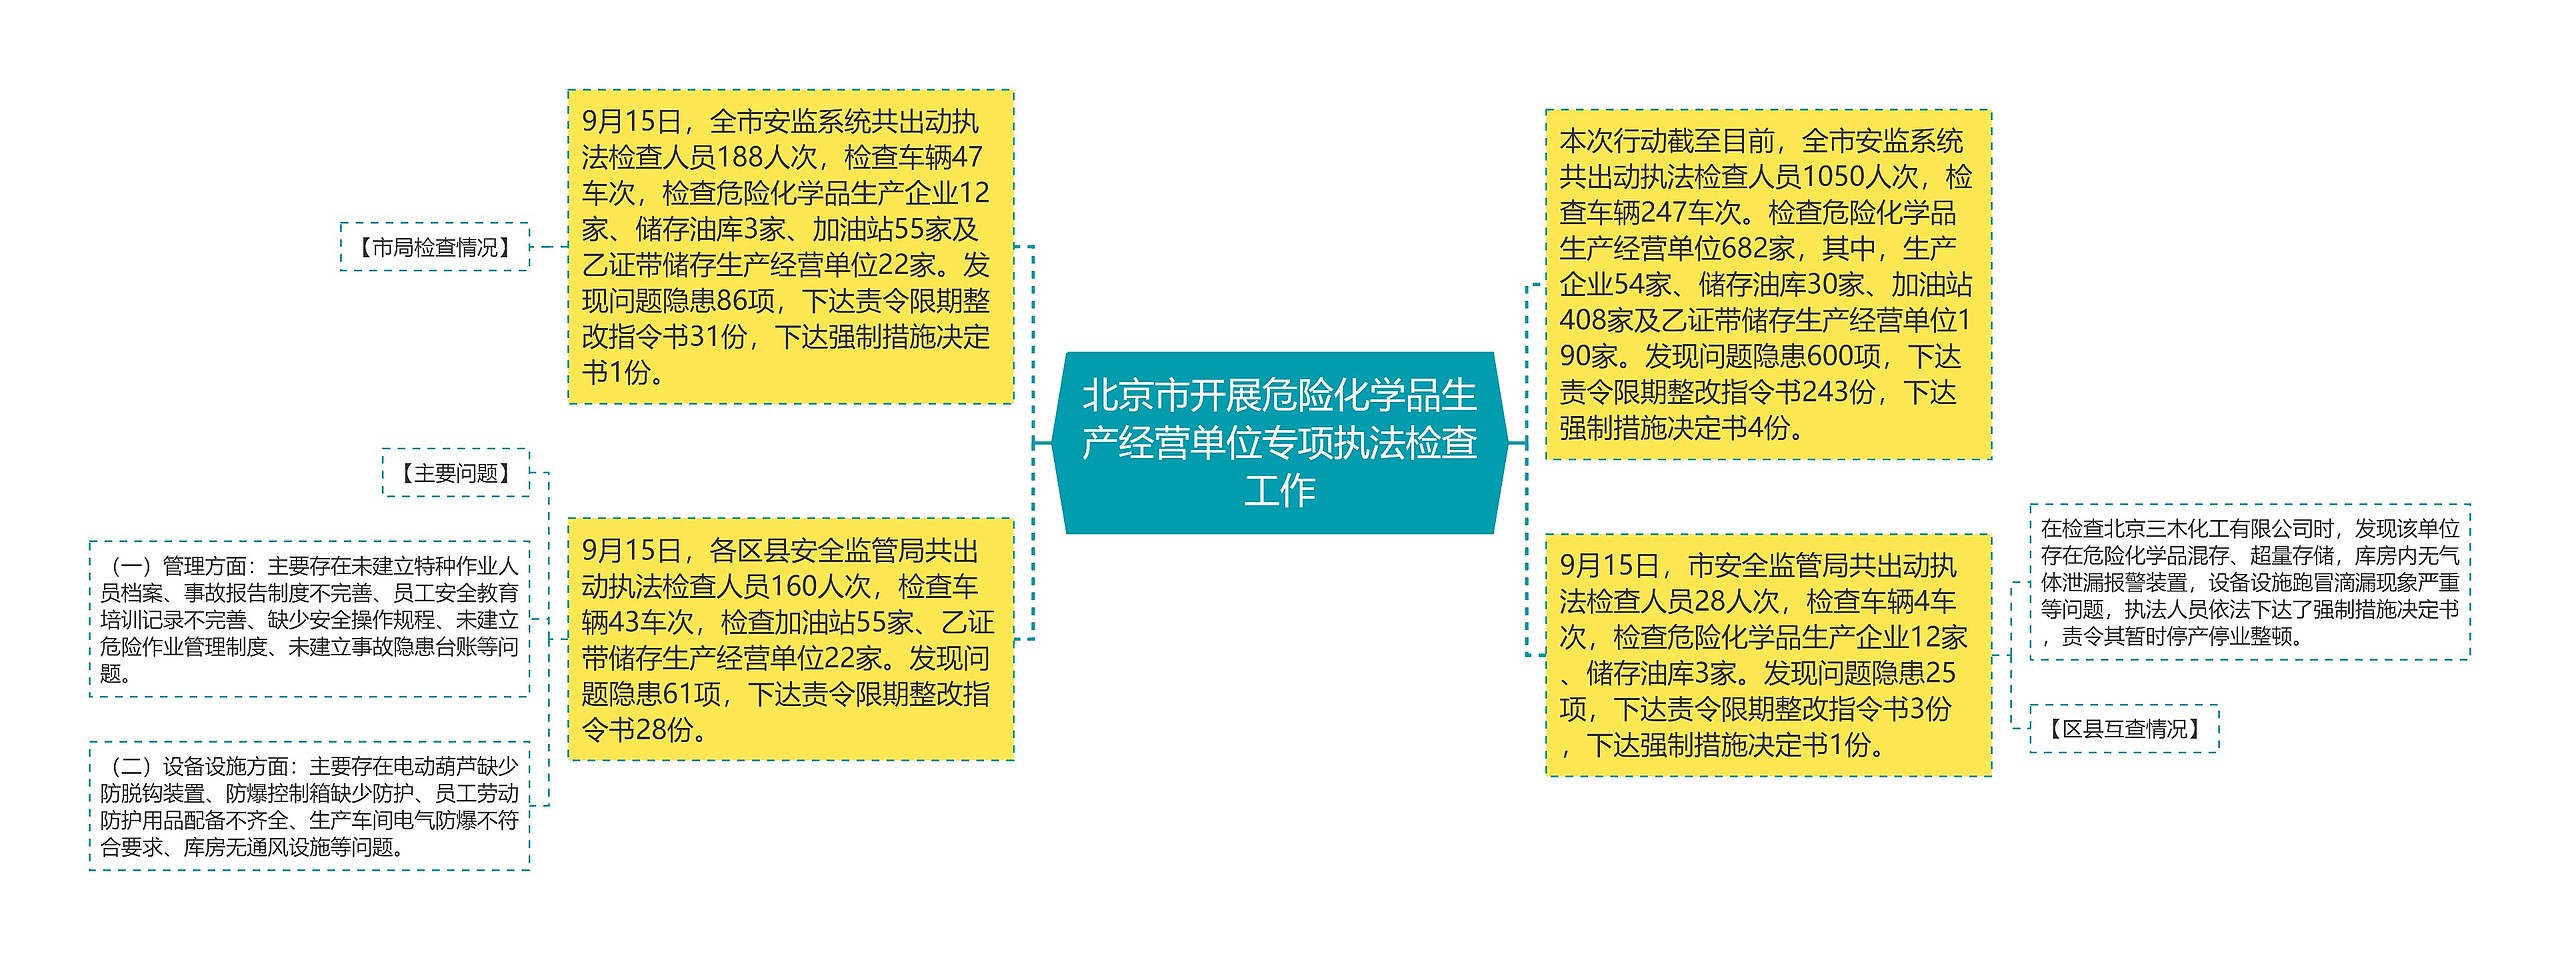 北京市开展危险化学品生产经营单位专项执法检查工作